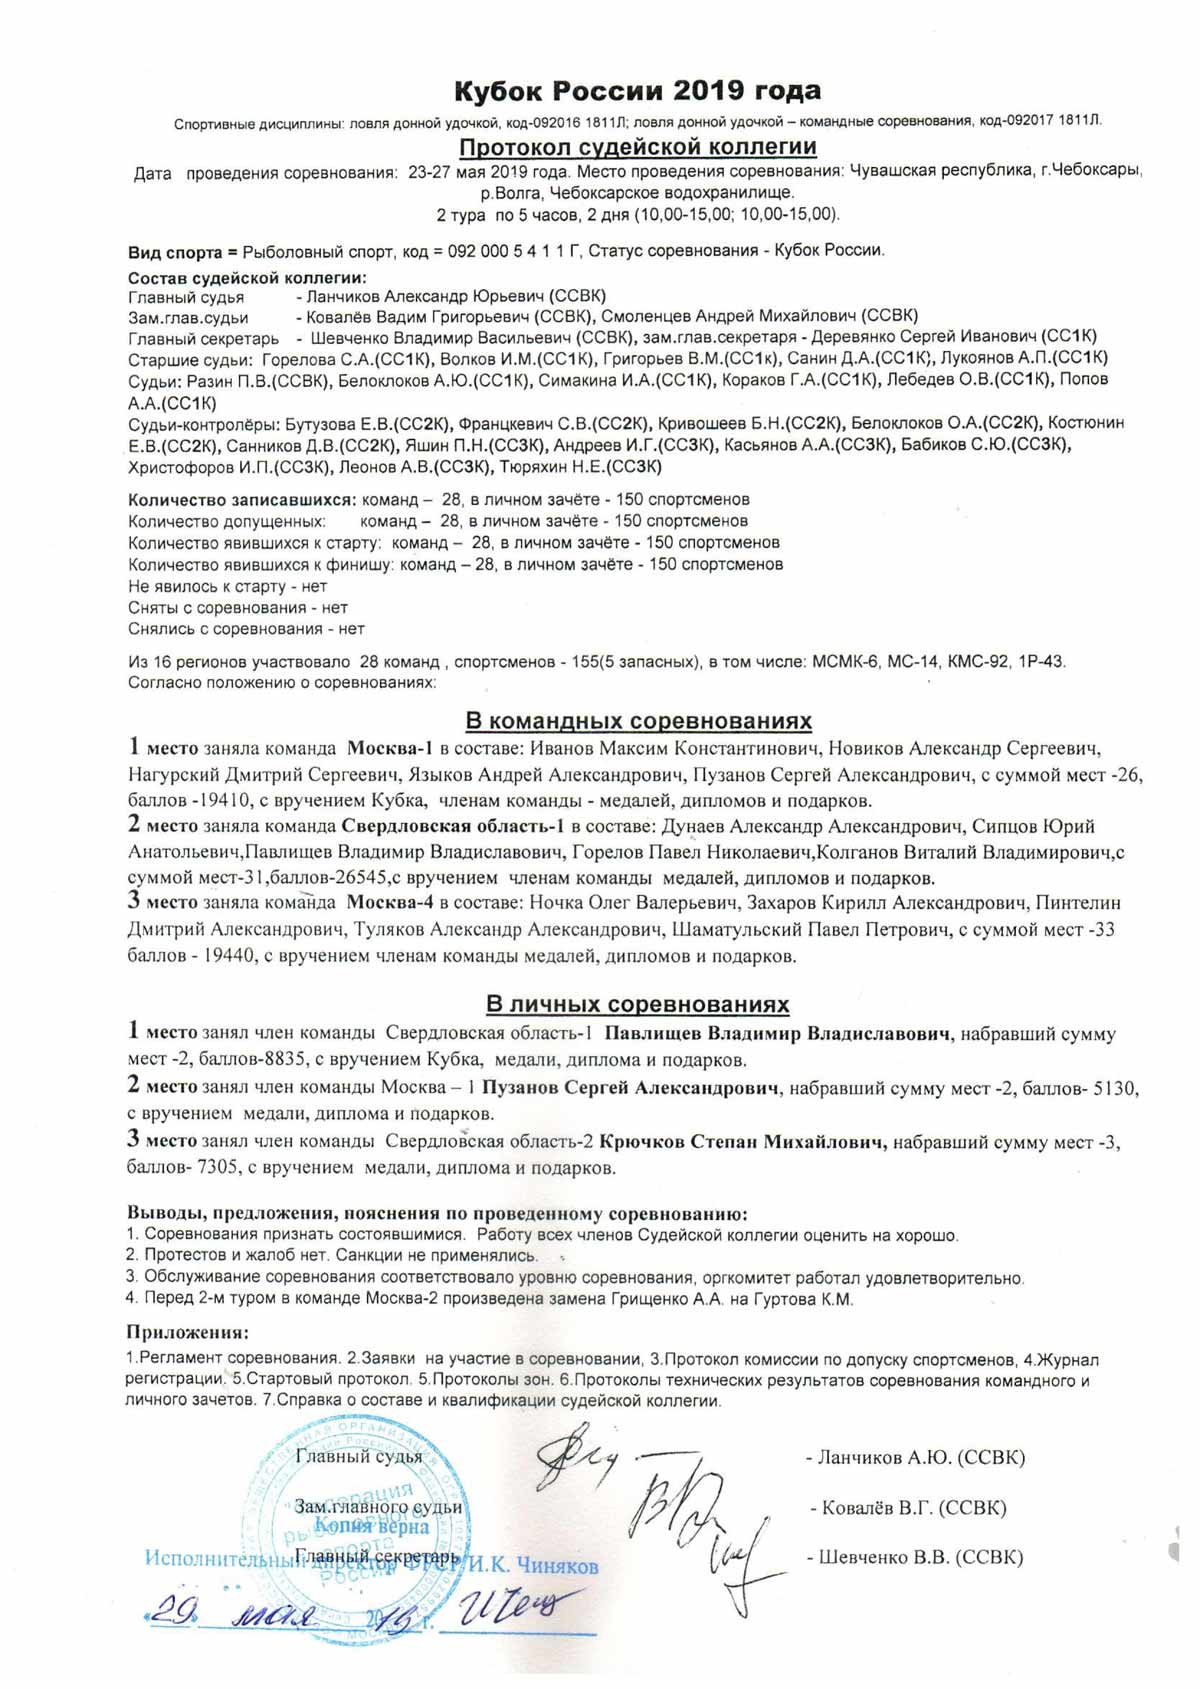 Протоколы технических результатов Кубка России 2019 года по ловле донной удочкой с 23-27 мая 2019 года, г. Чебоксары